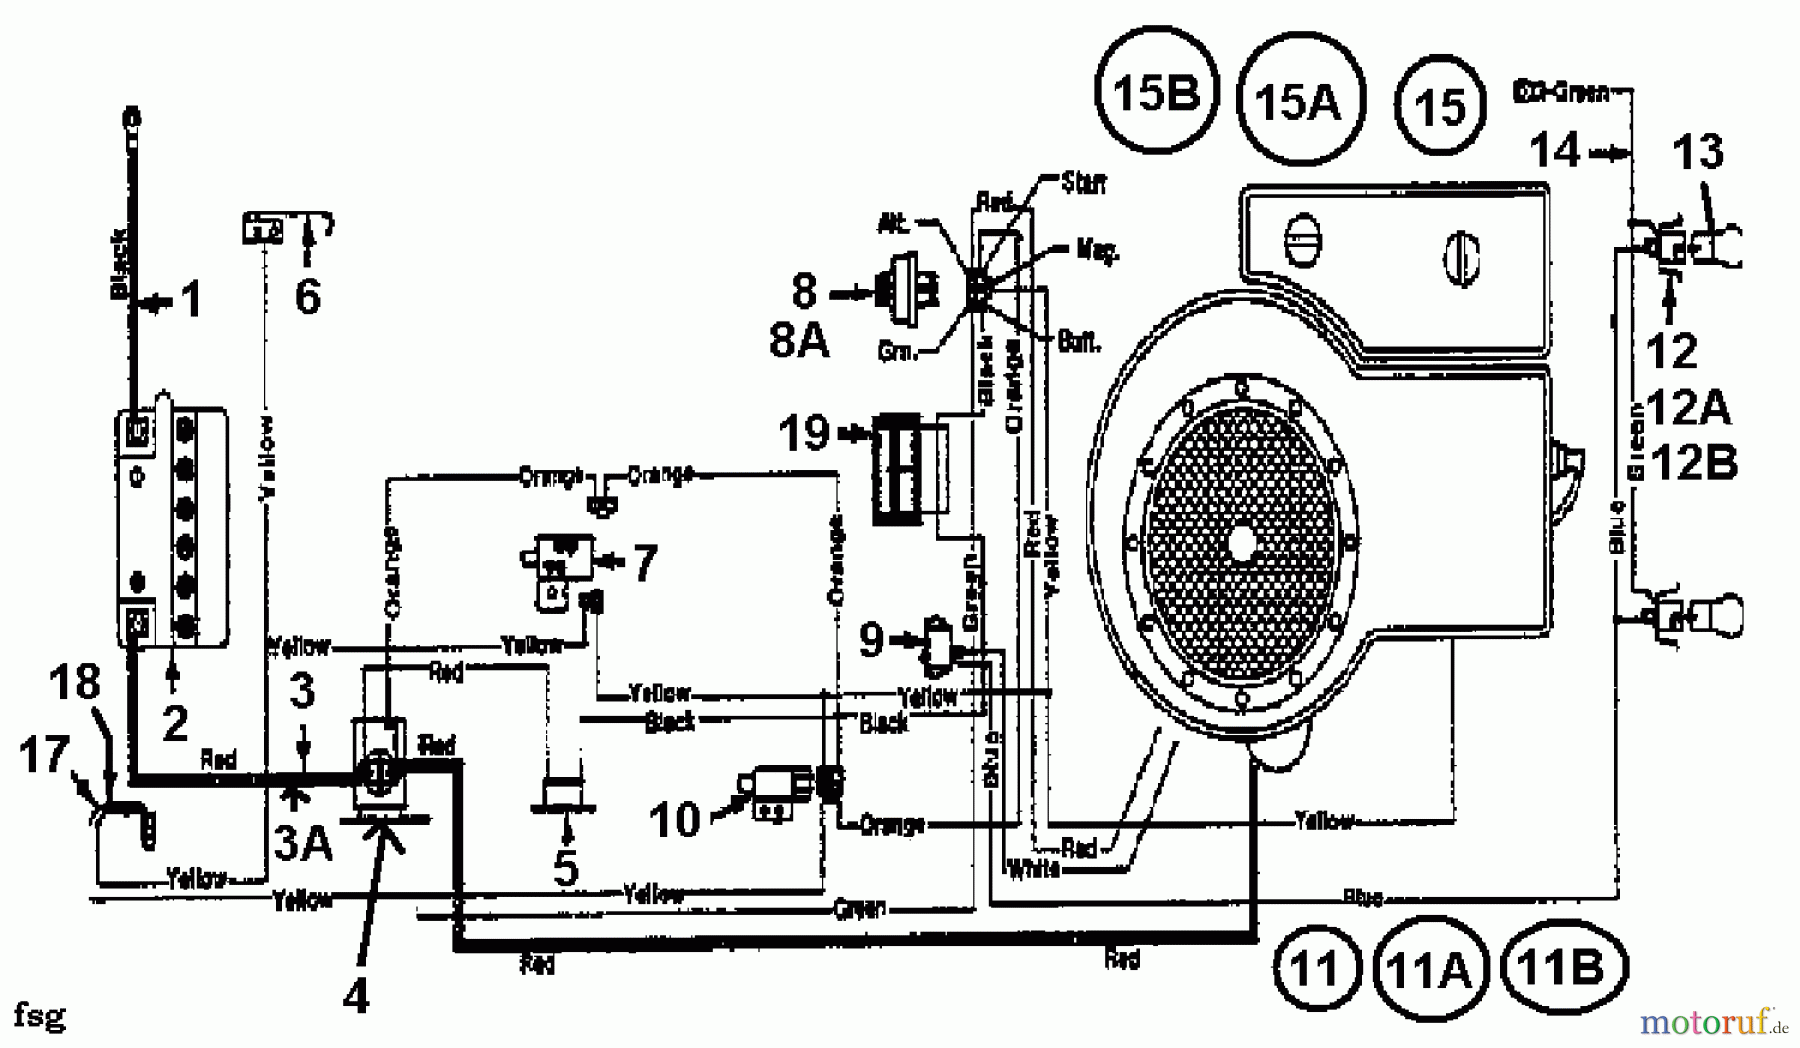  Columbia Tracteurs de pelouse 111/910 N 132-430E600  (1992) Plan électrique cylindre simple